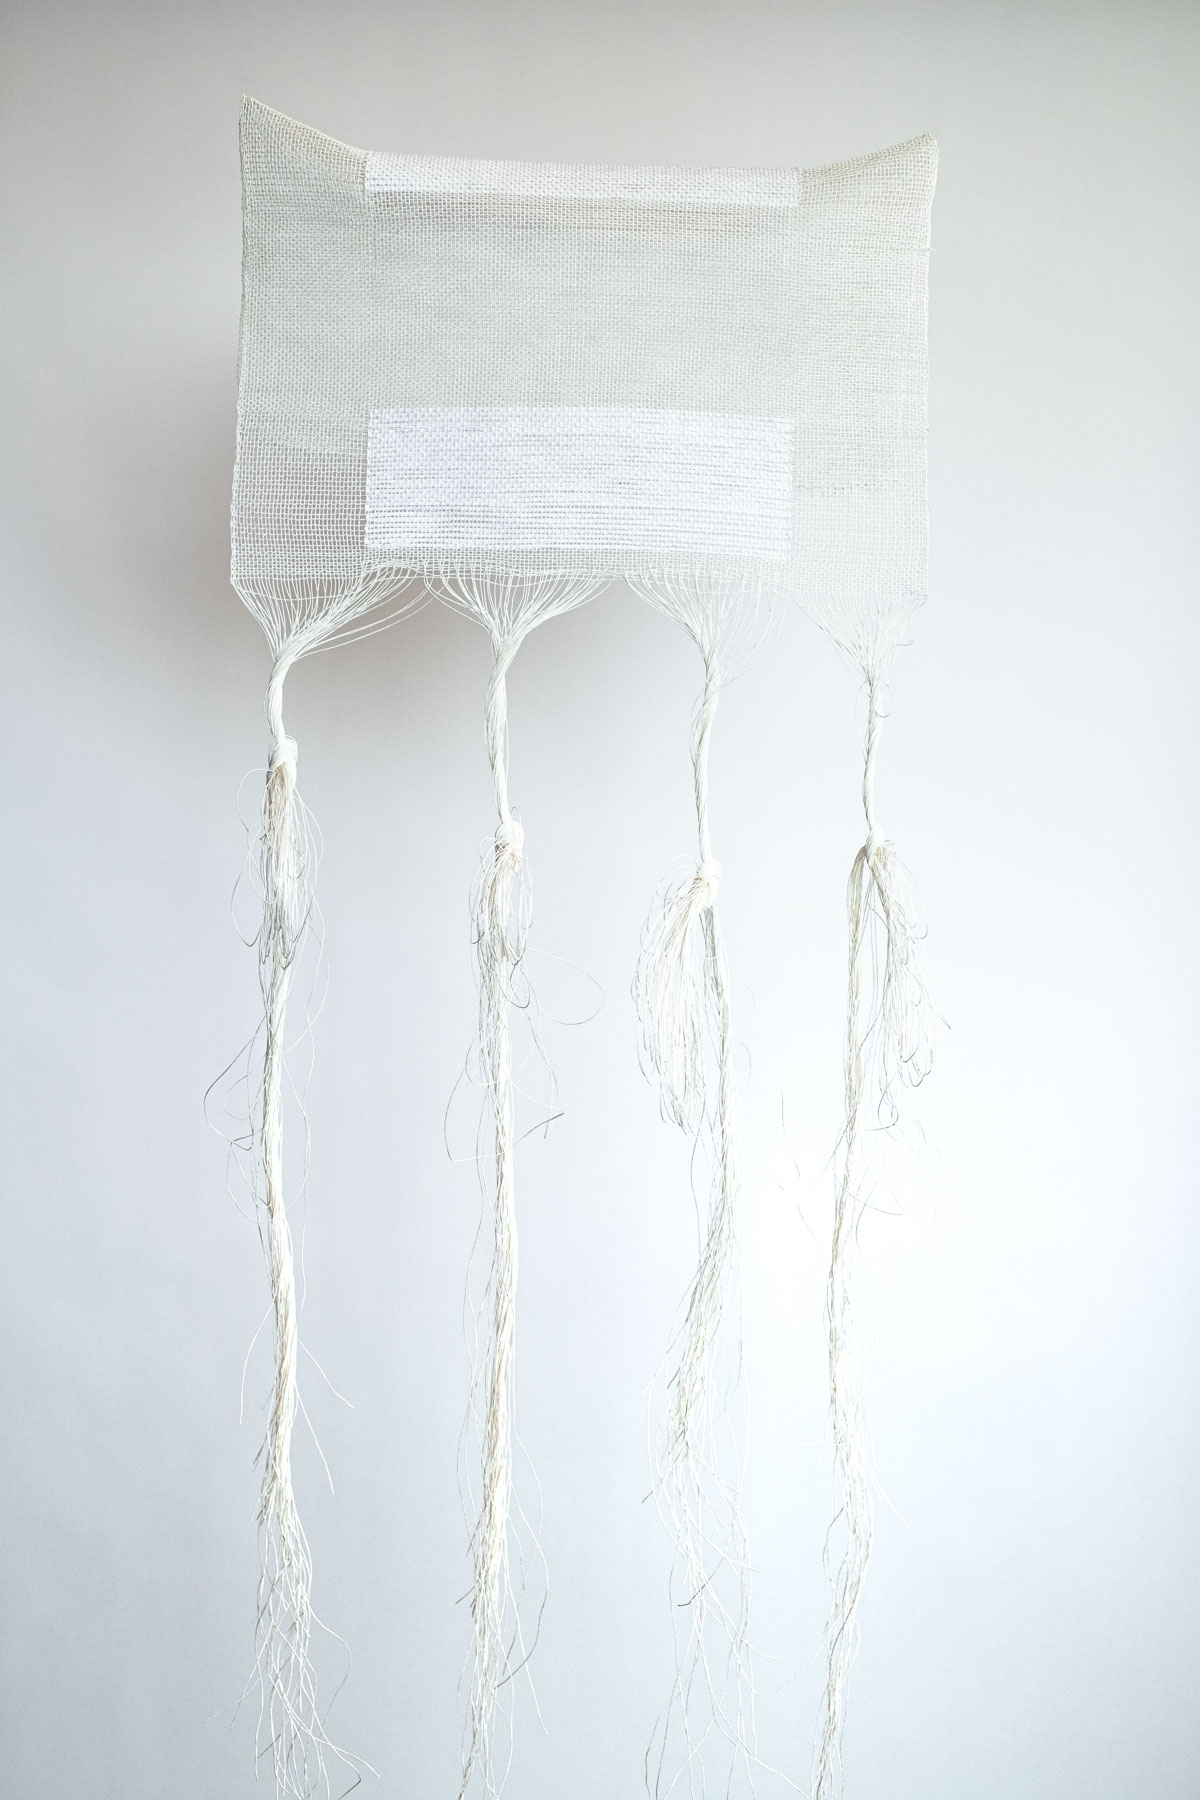 Curva Con Doppio Schermo (2020) 55x37x5.5 cm Paper yarn, paper tape yarn